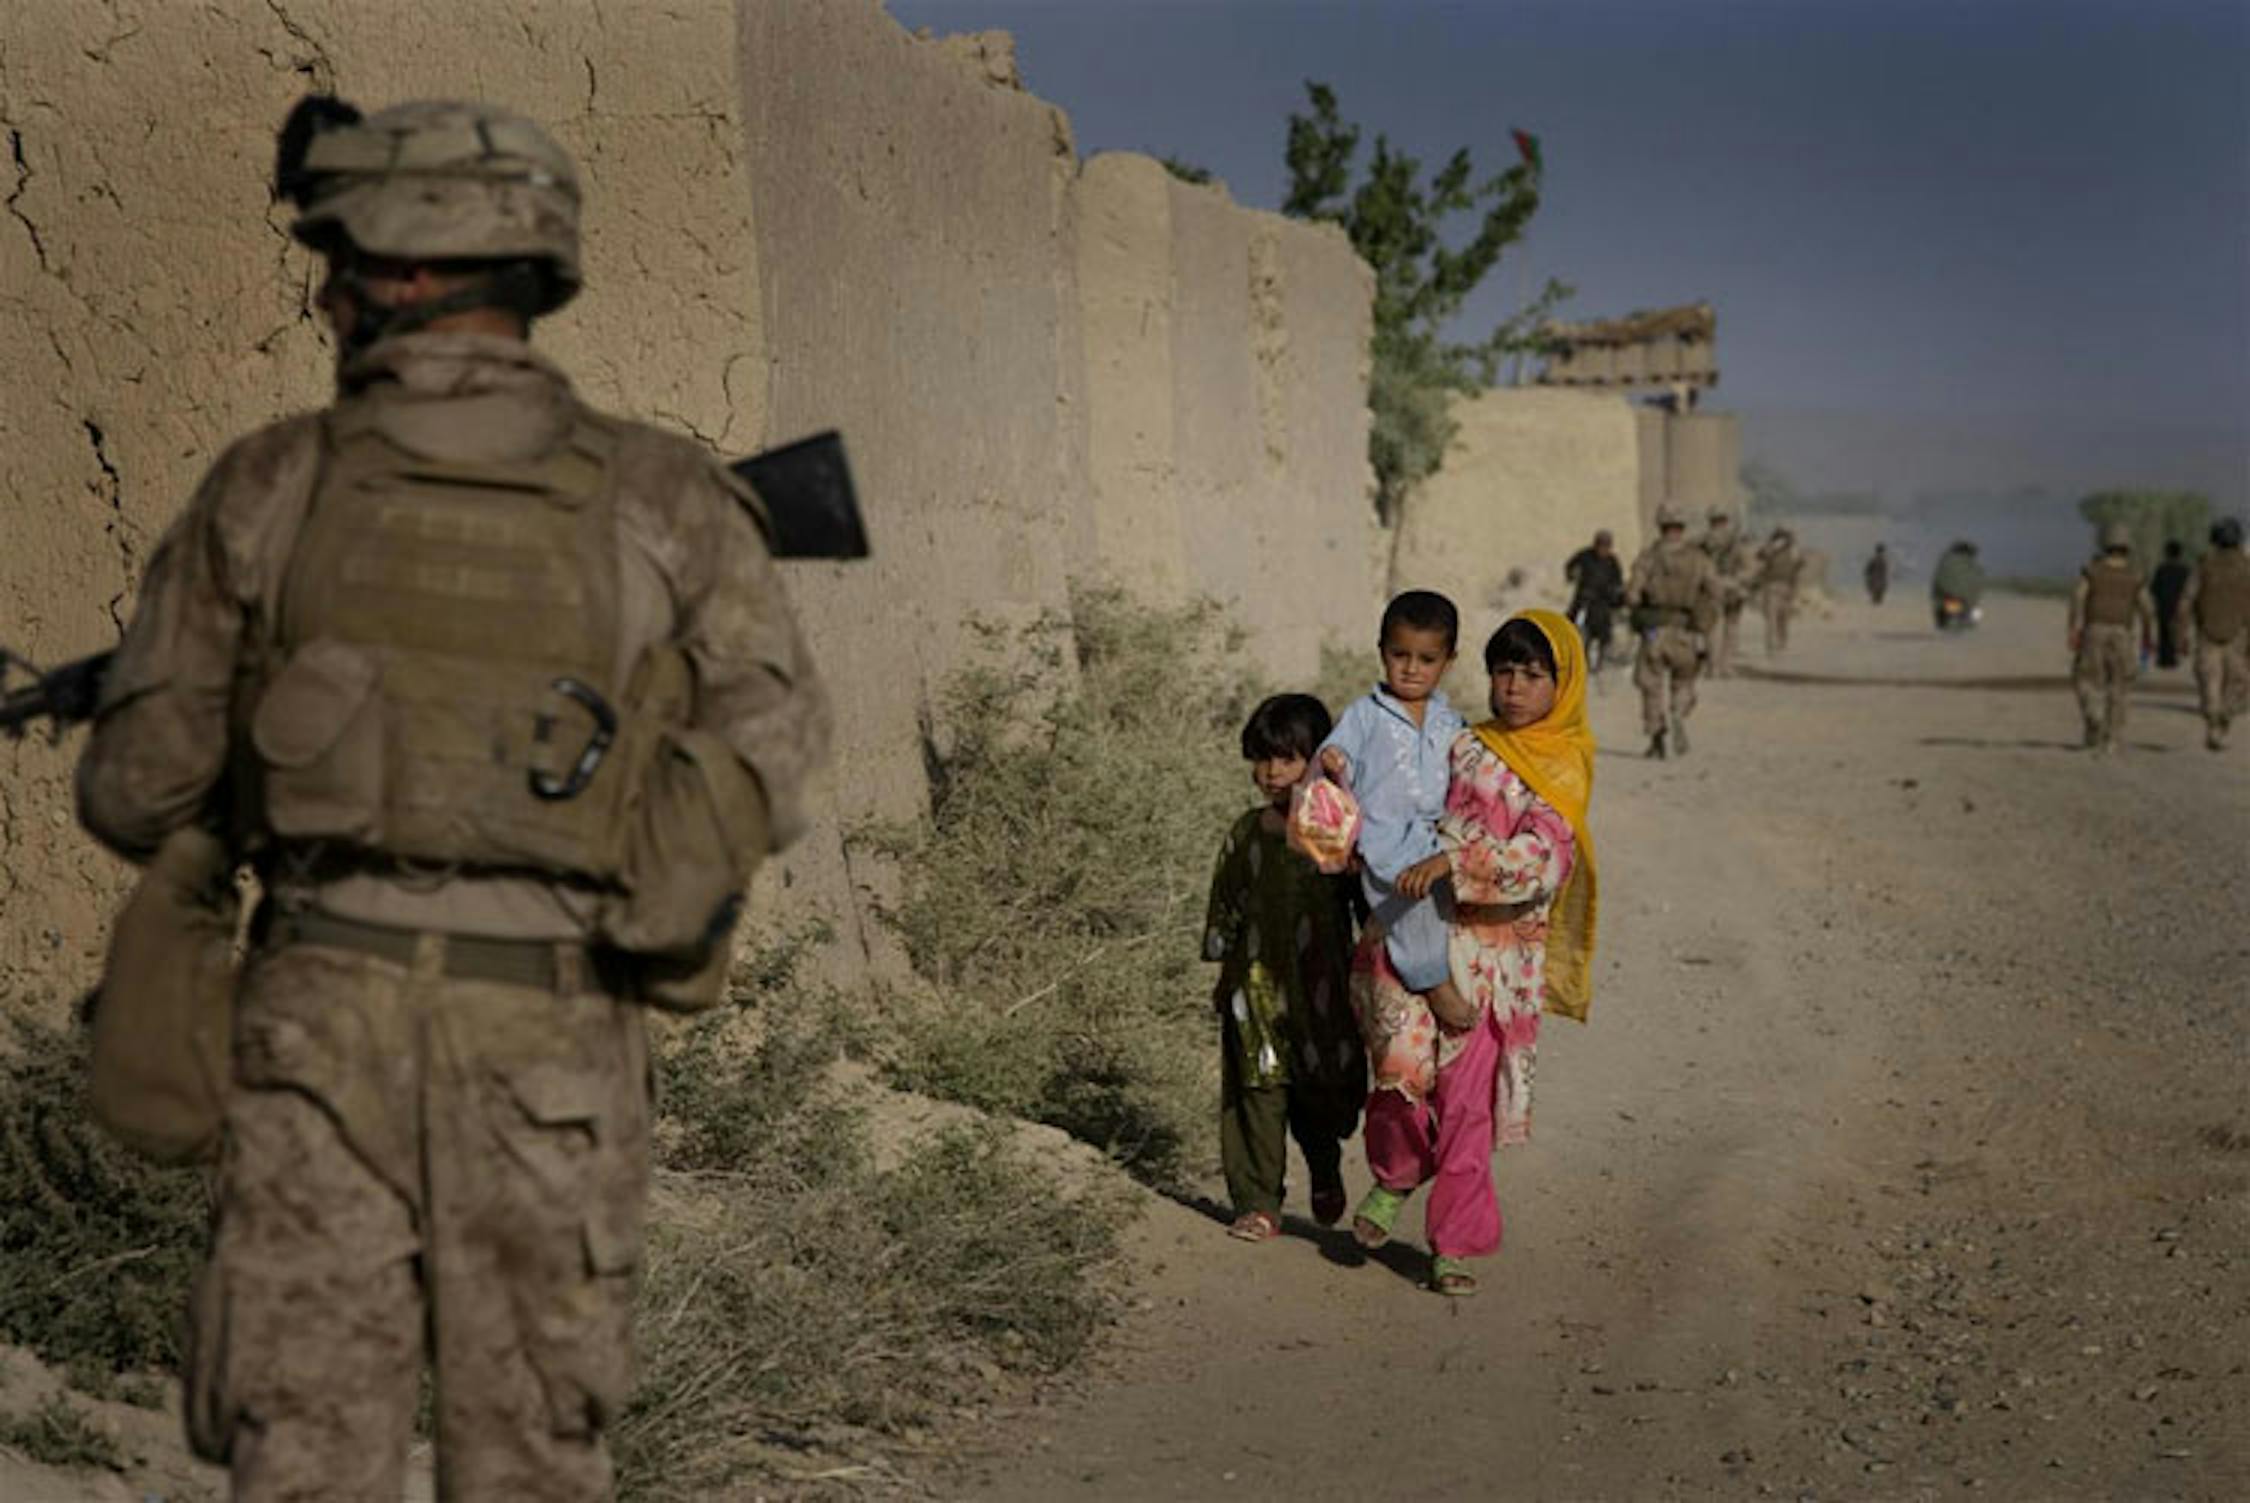 Un militare americano e un gruppo di bambini in una strada di Germsir Bazaar, nella provincia di Helmand (Afghanistan), crocevia dei traffici di armi e oppio - ©UNICEF/NYHQ2010-0792/Holt